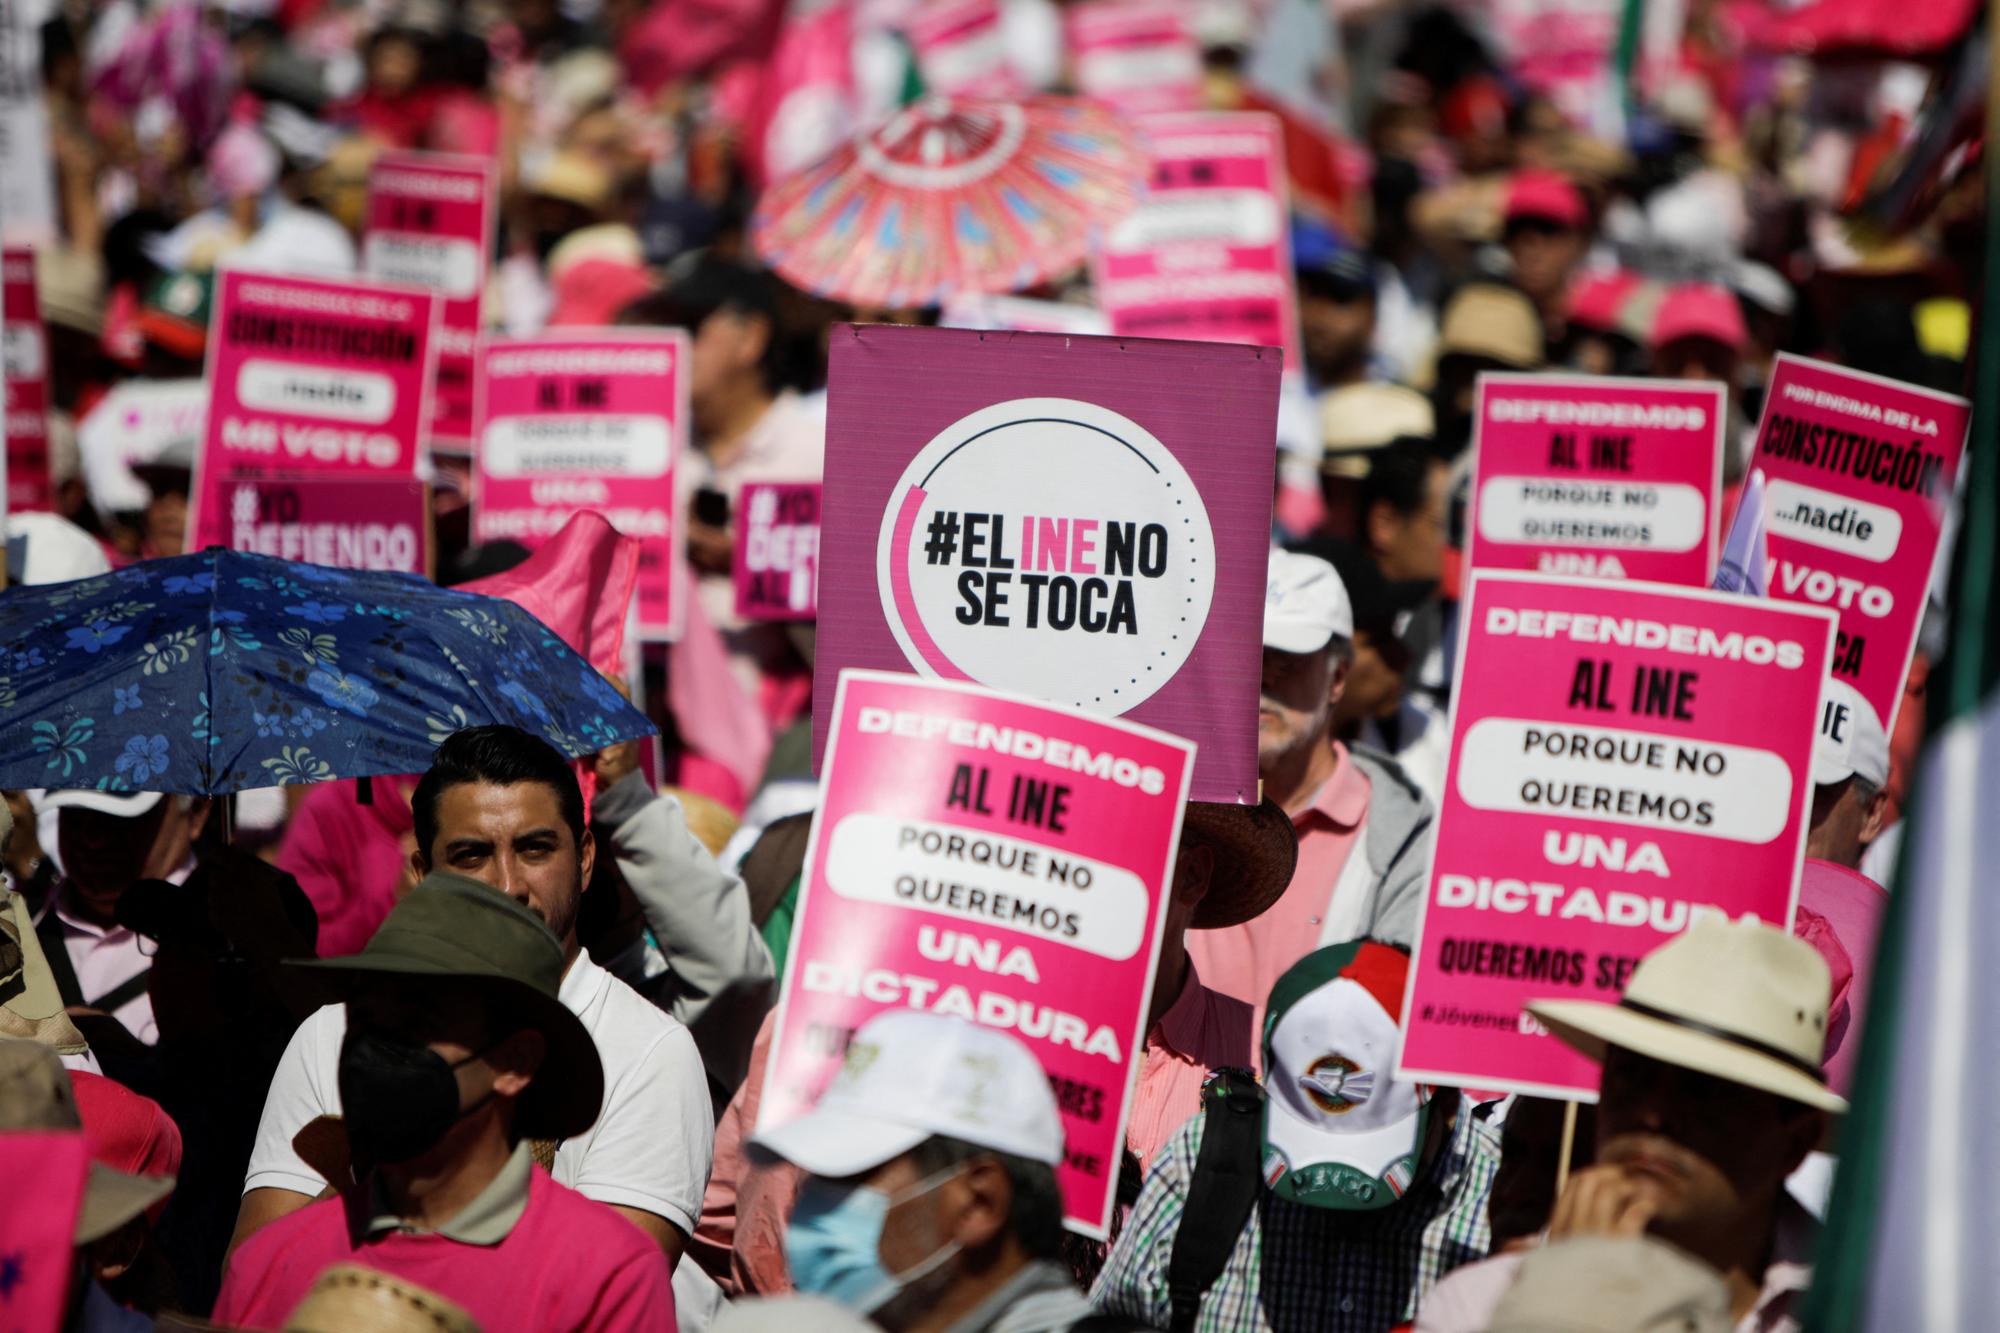 "El INE no se toca" - "On ne touche pas à l'INE" - scandent les manifestants à Mexico. [REUTERS - Luis Cortes]